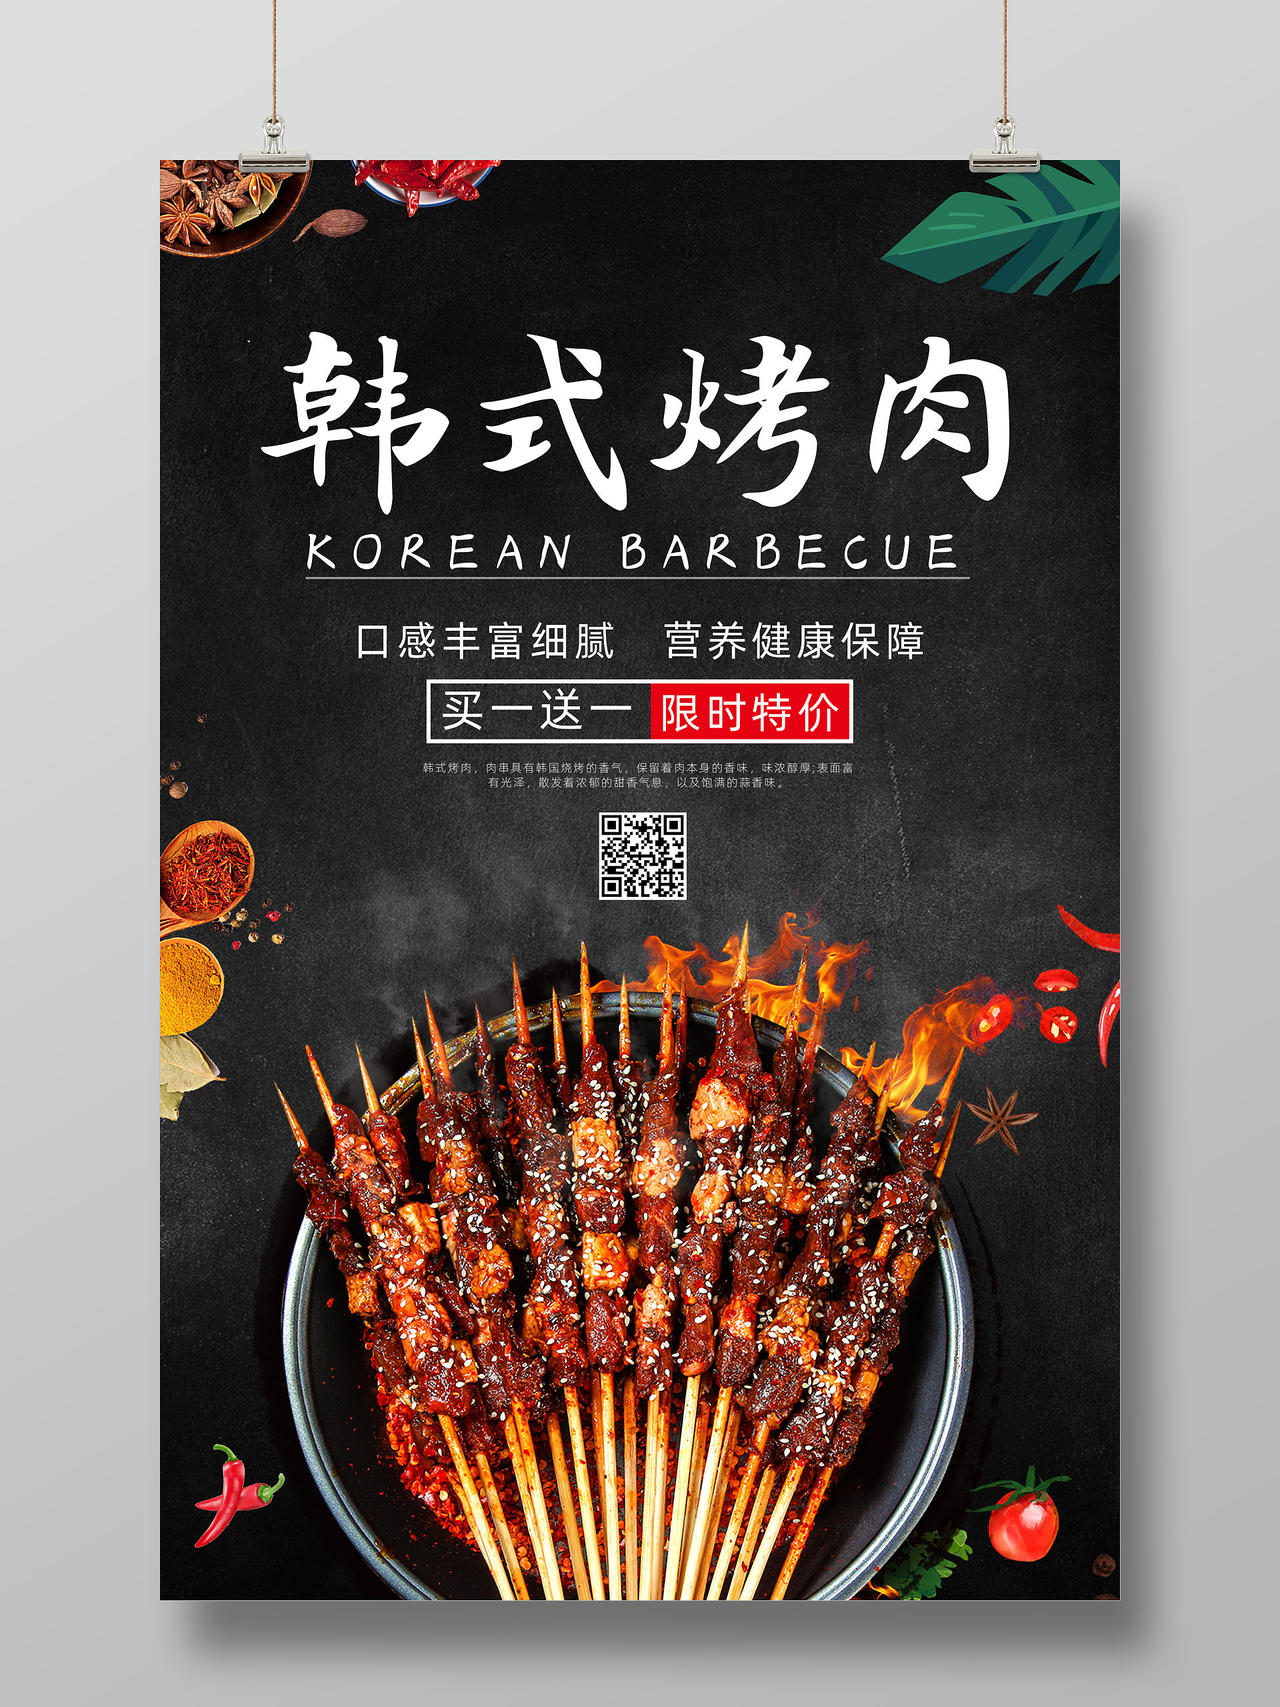 黑色质感买一送一限时特价韩式烤肉海报